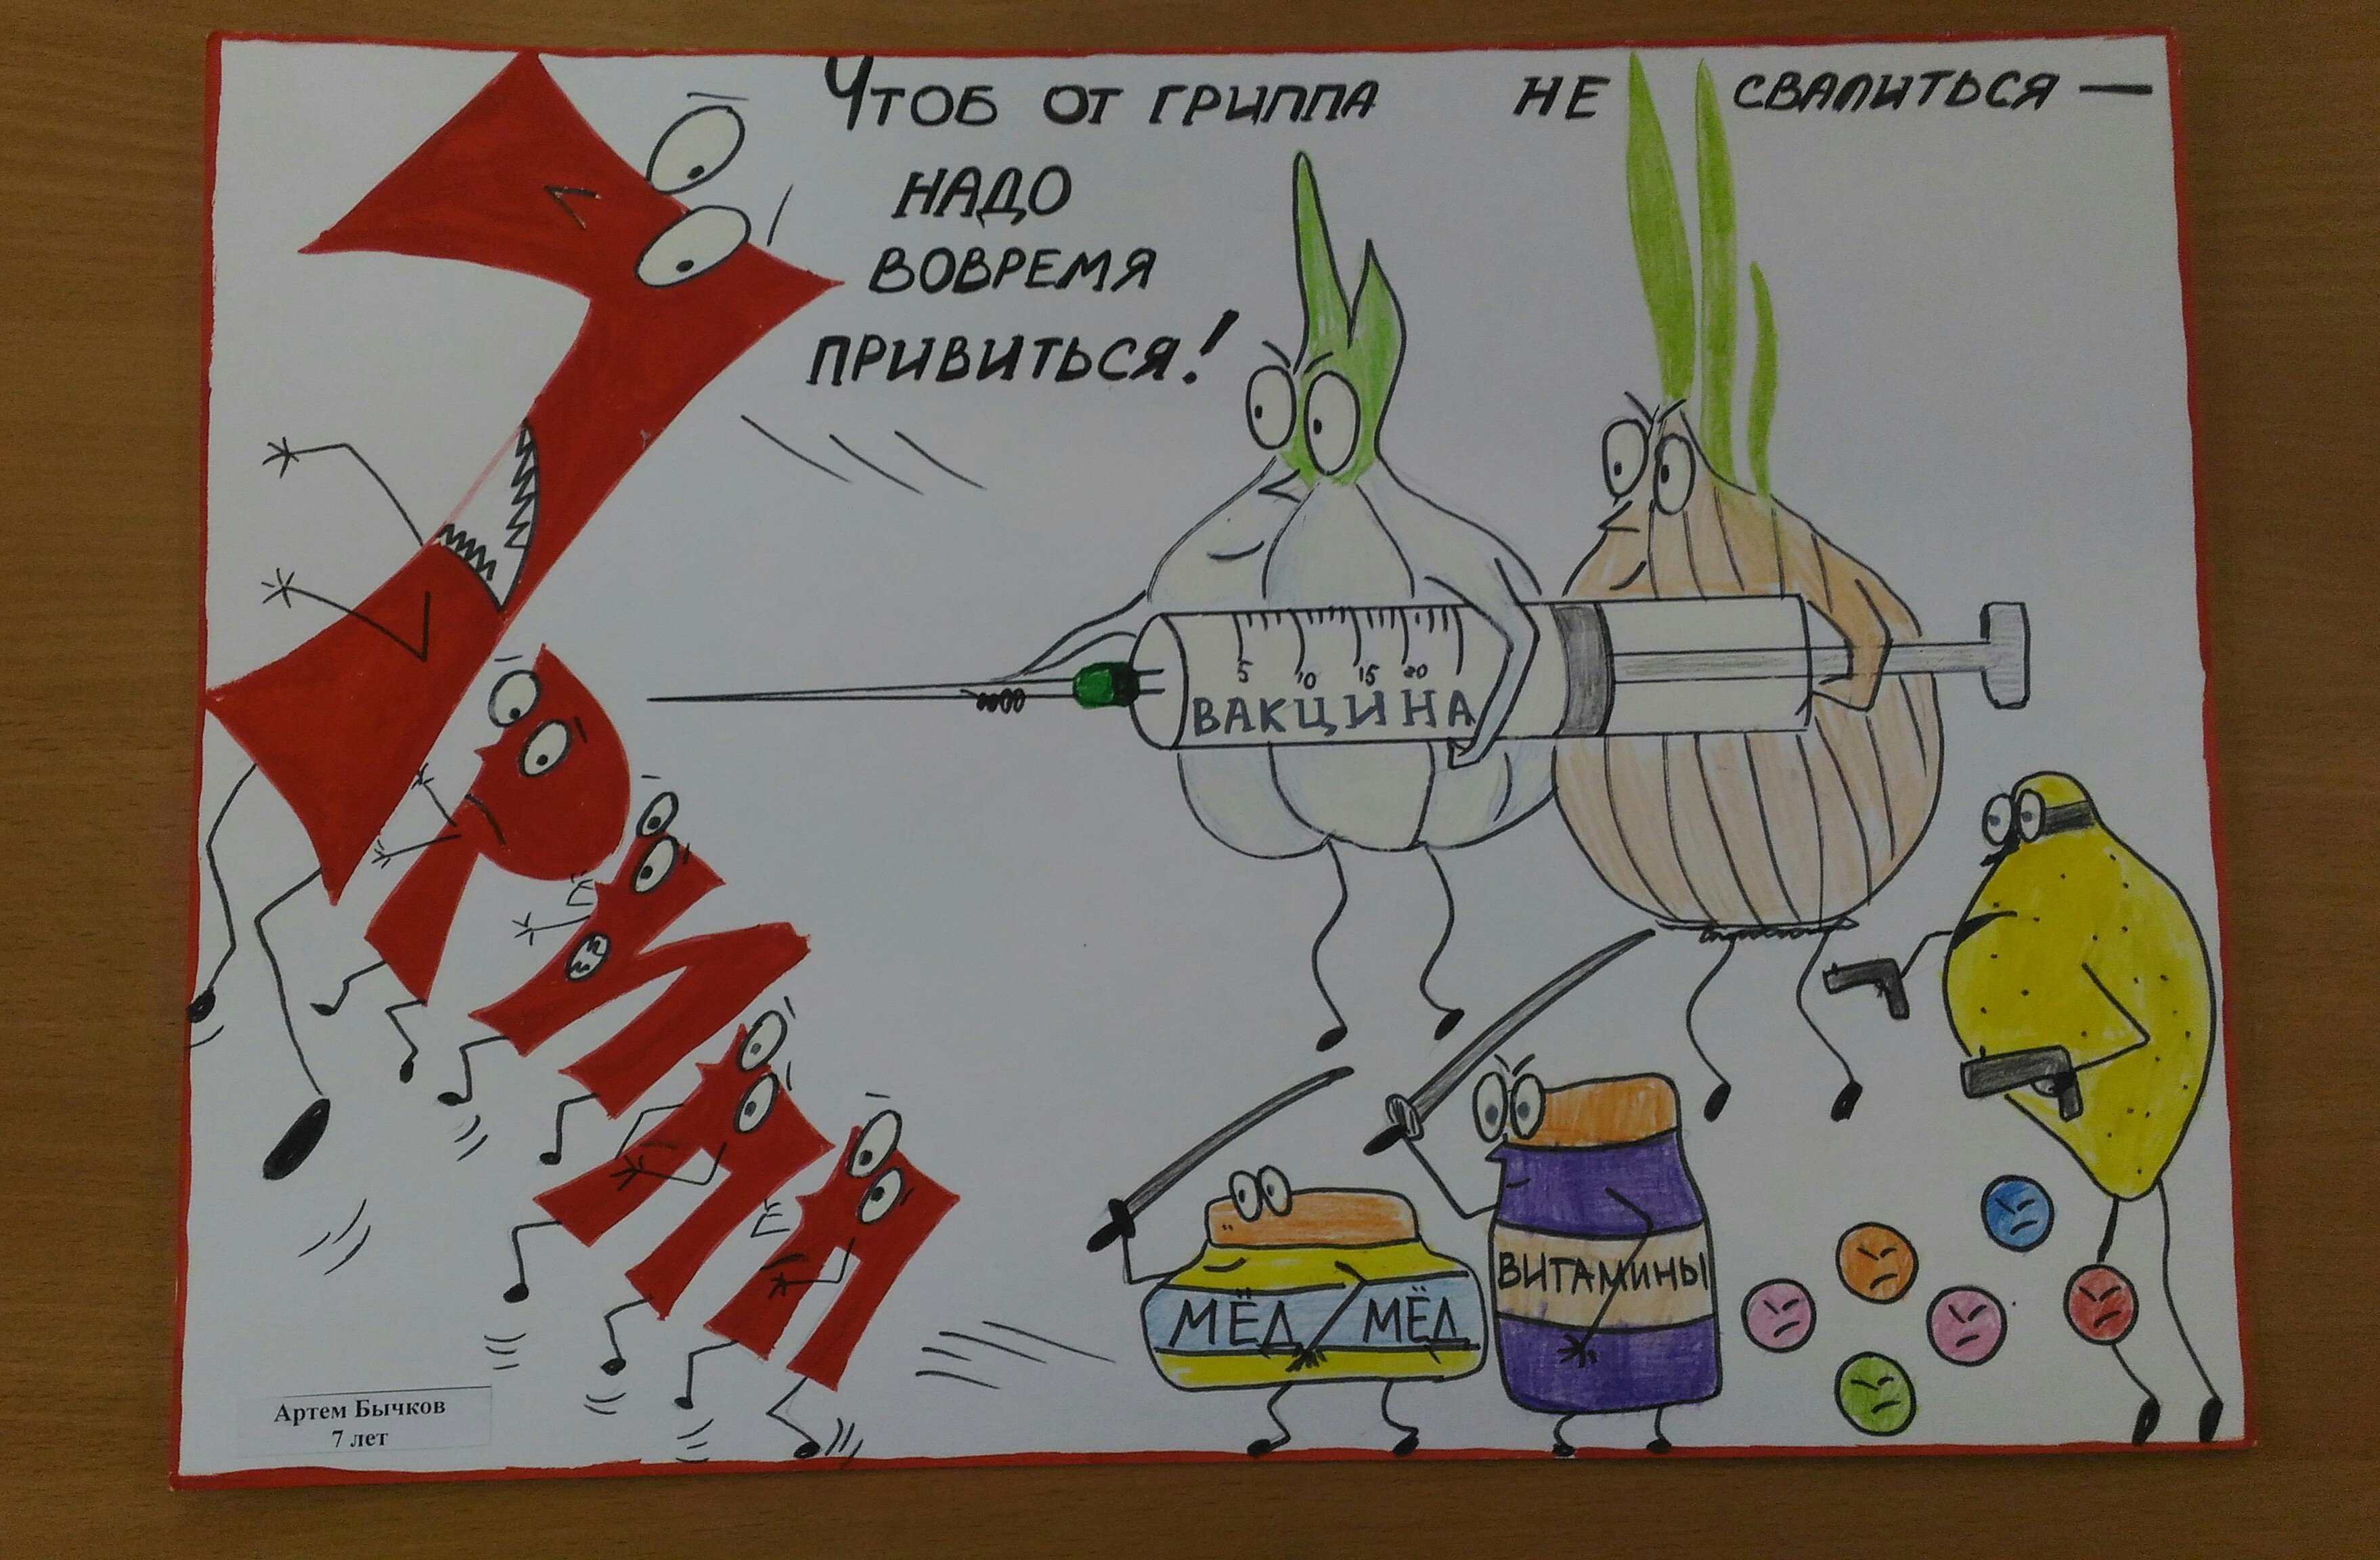 Супергерои против гриппа. Рисунок против гриппа. Плакат против гриппа. Плакат на тему борьбы с гриппом. Нарисуйте агитационный плакат вирусы.